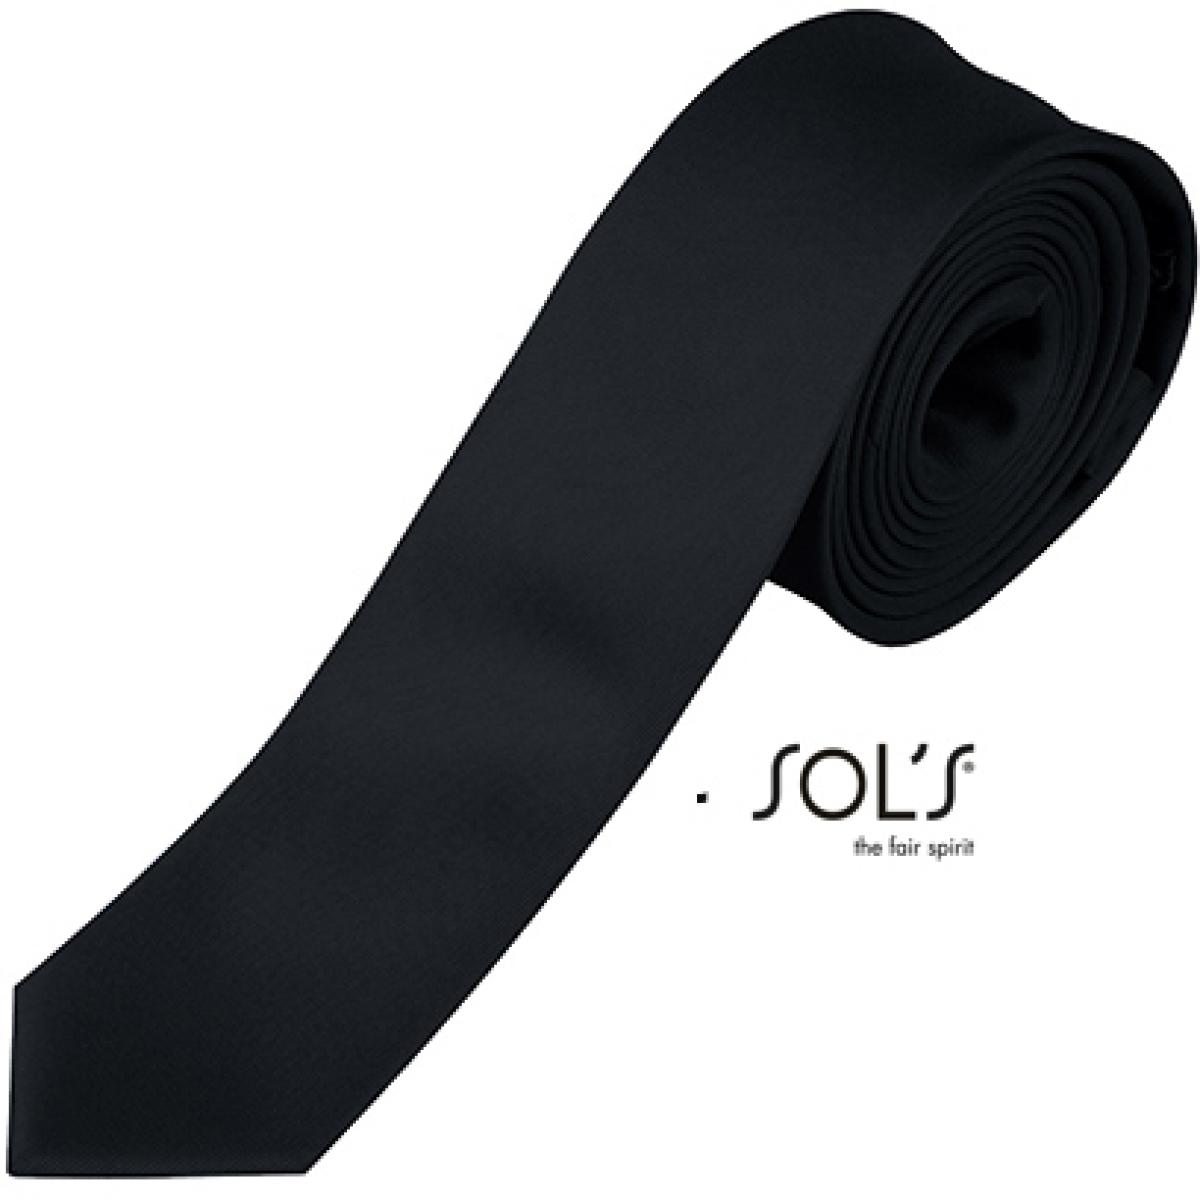 Hersteller: SOLs Herstellernummer: 00598 Artikelbezeichnung: Slim Tie Gatsby Krawatte Farbe: Black